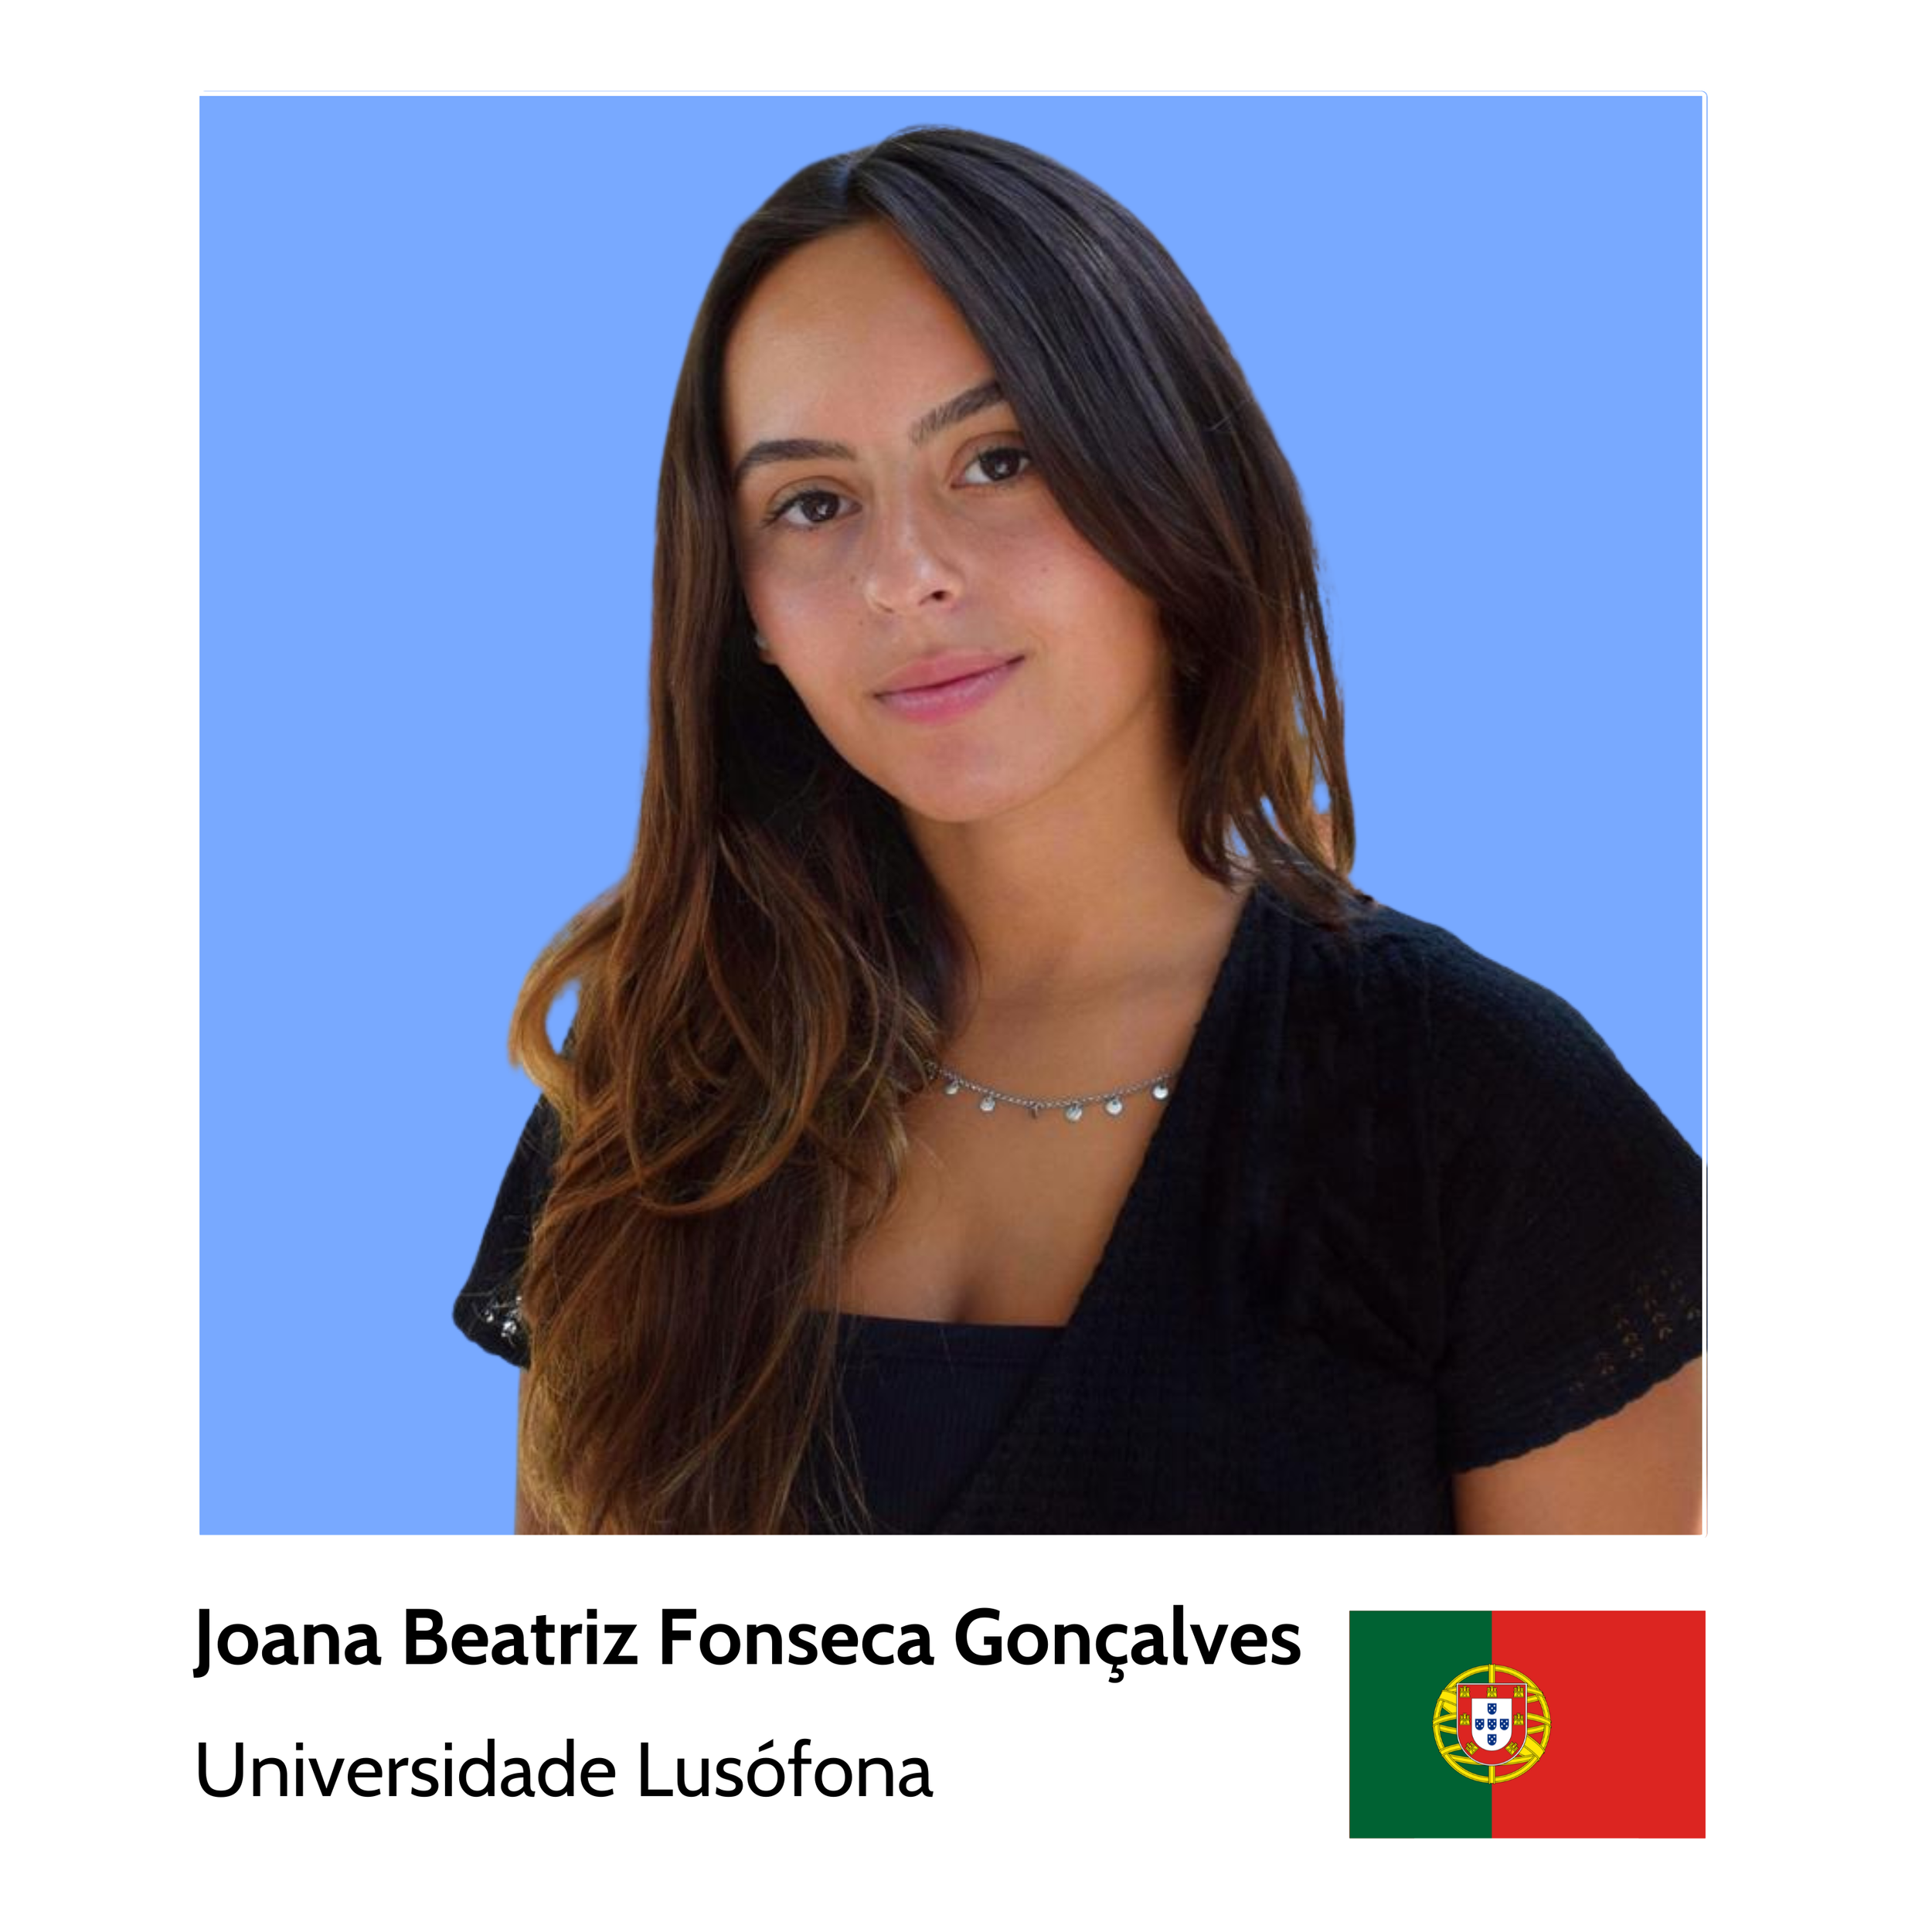 Your_Big_Year_ibm_z_student_ambassador_Joana_Beatriz_Fonseca_Gonçalves_Universidade_Lusófona.png